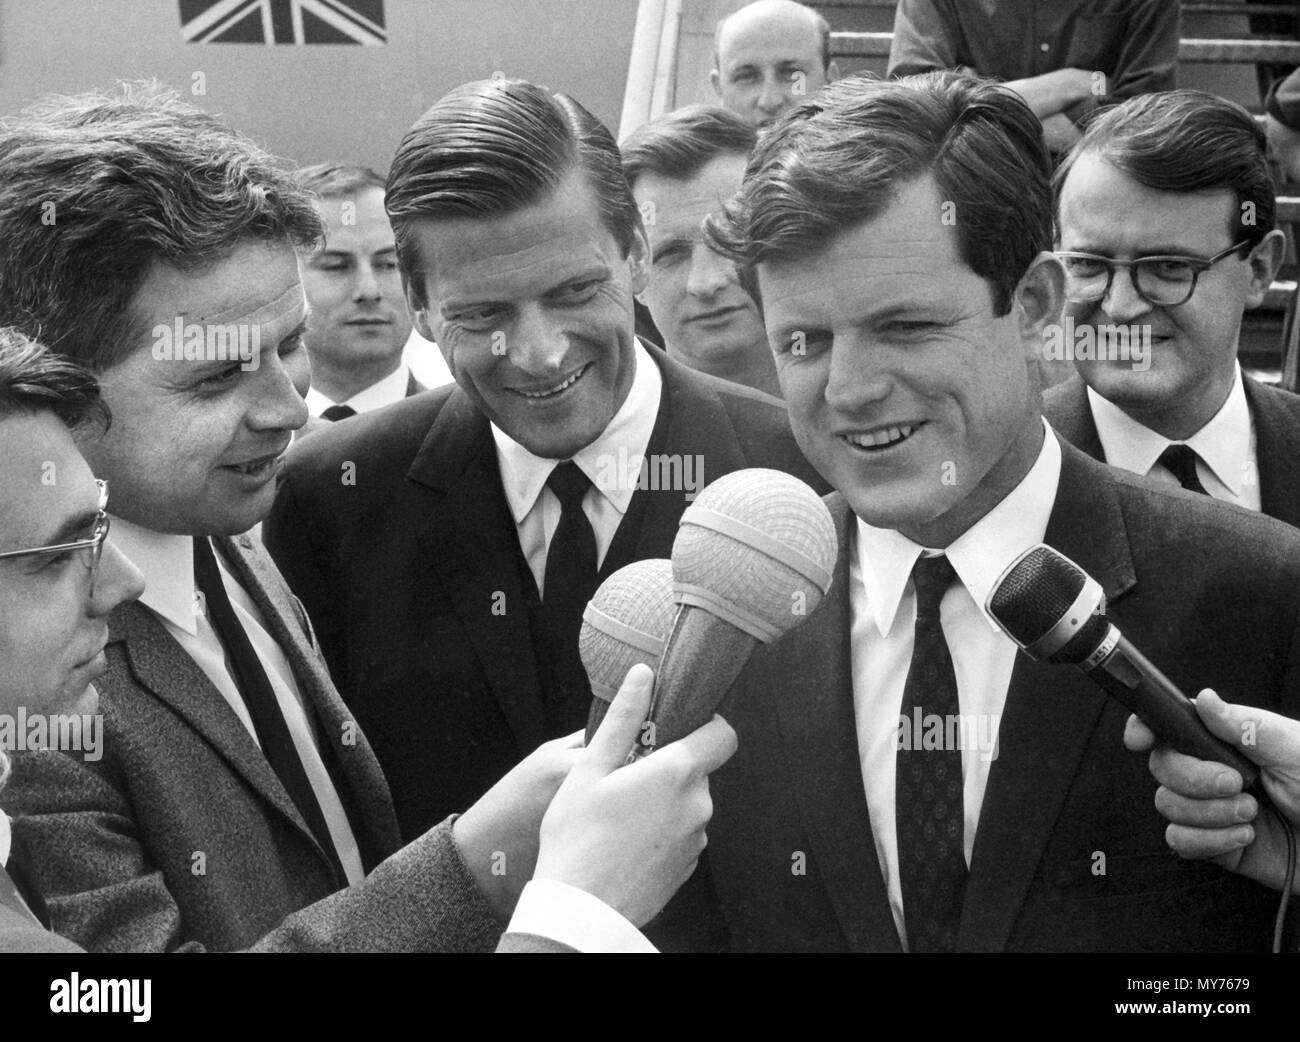 Der demokratische Senator aus Massachusetts, Edward Kennedy (r), spricht mit Journalisten nach seiner Ankunft am Flughafen Rhein-Main in Frankfurt, Deutschland, am 9. Mai 1966. Auf der linken Seite ist der CDU-Politiker Walter Leisler Kiep. | Verwendung weltweit Stockfoto